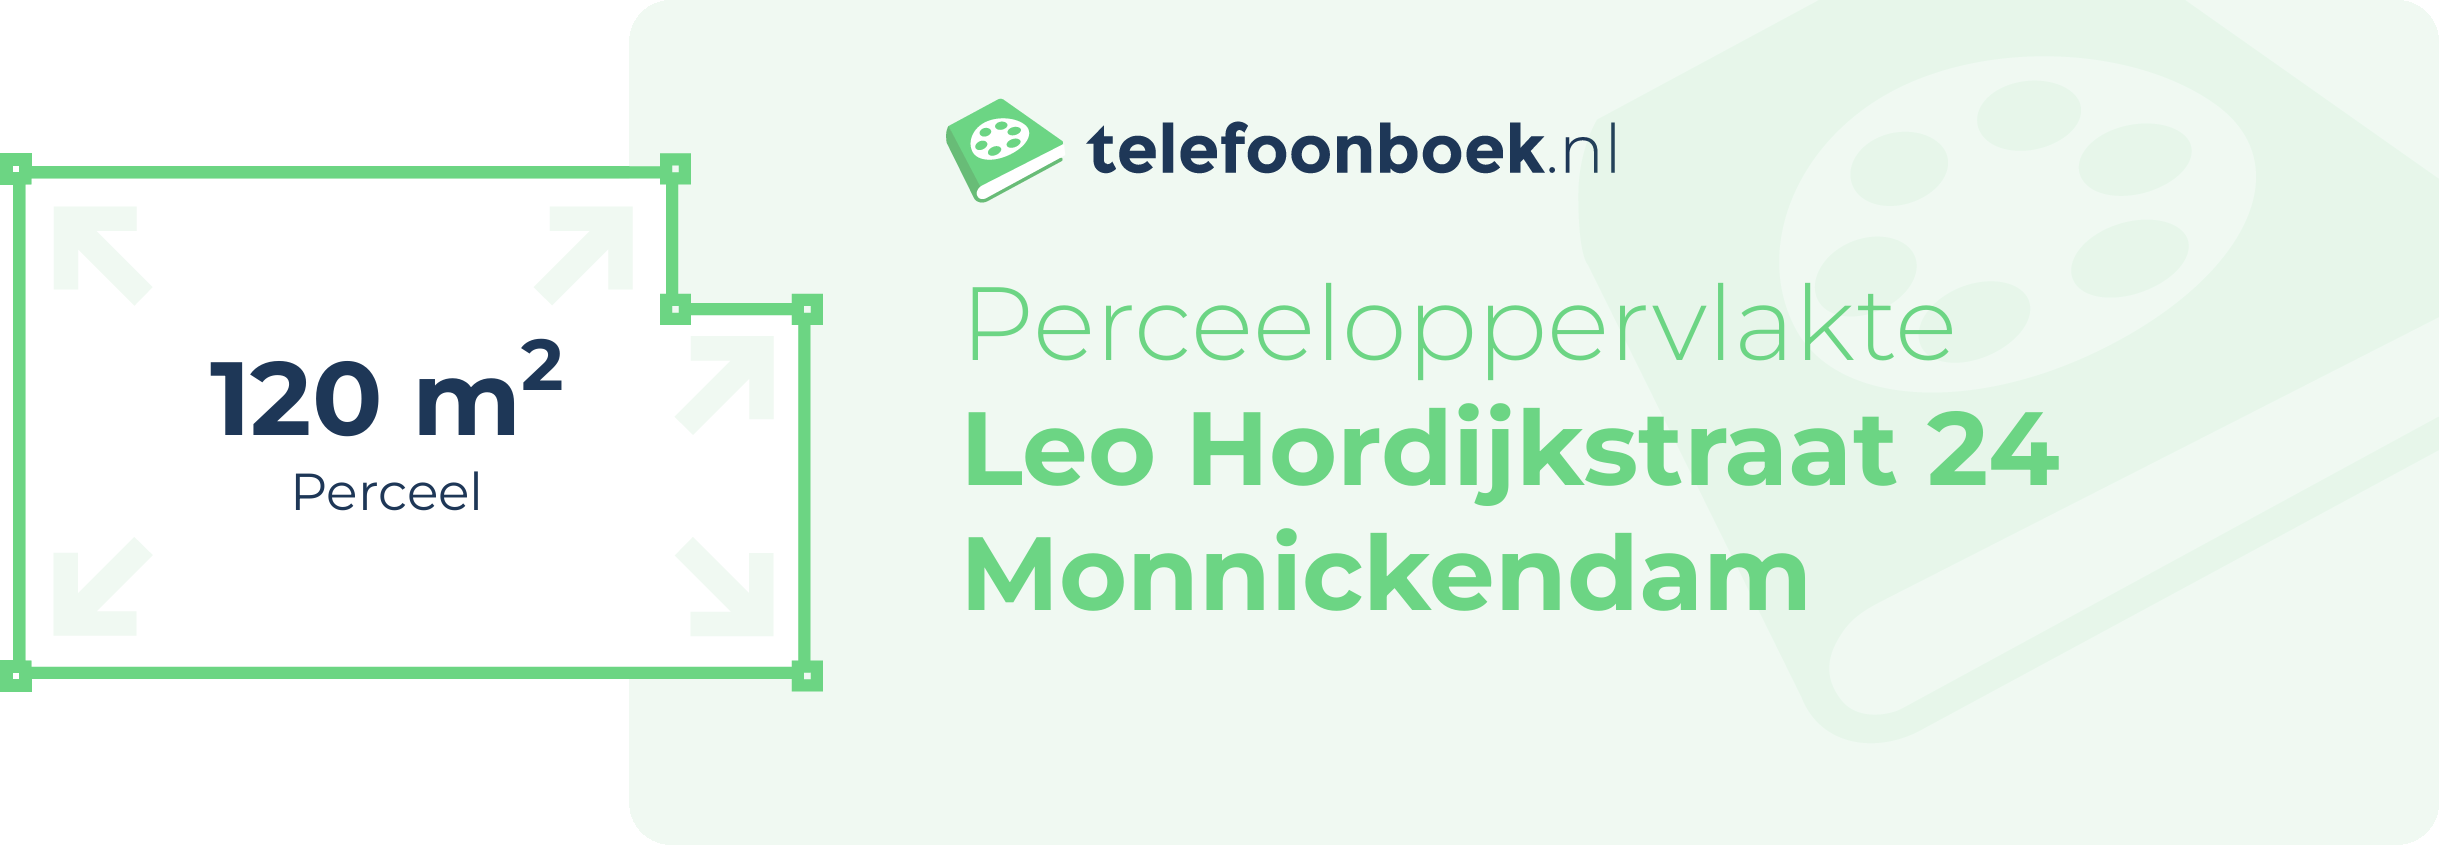 Perceeloppervlakte Leo Hordijkstraat 24 Monnickendam